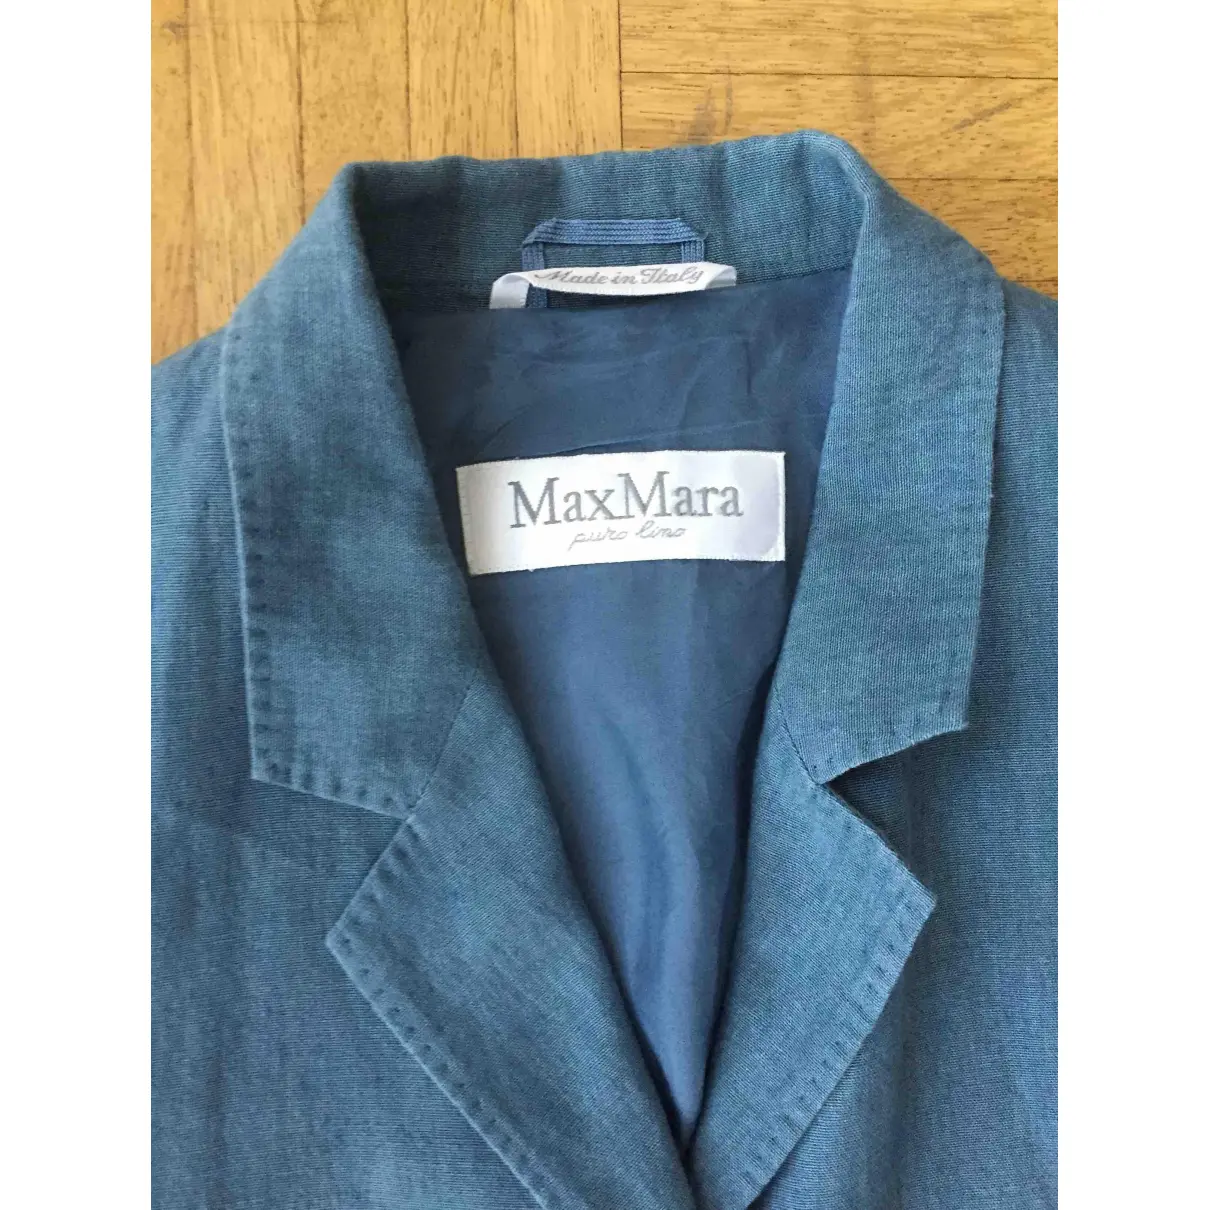 Buy Max Mara Linen jacket online